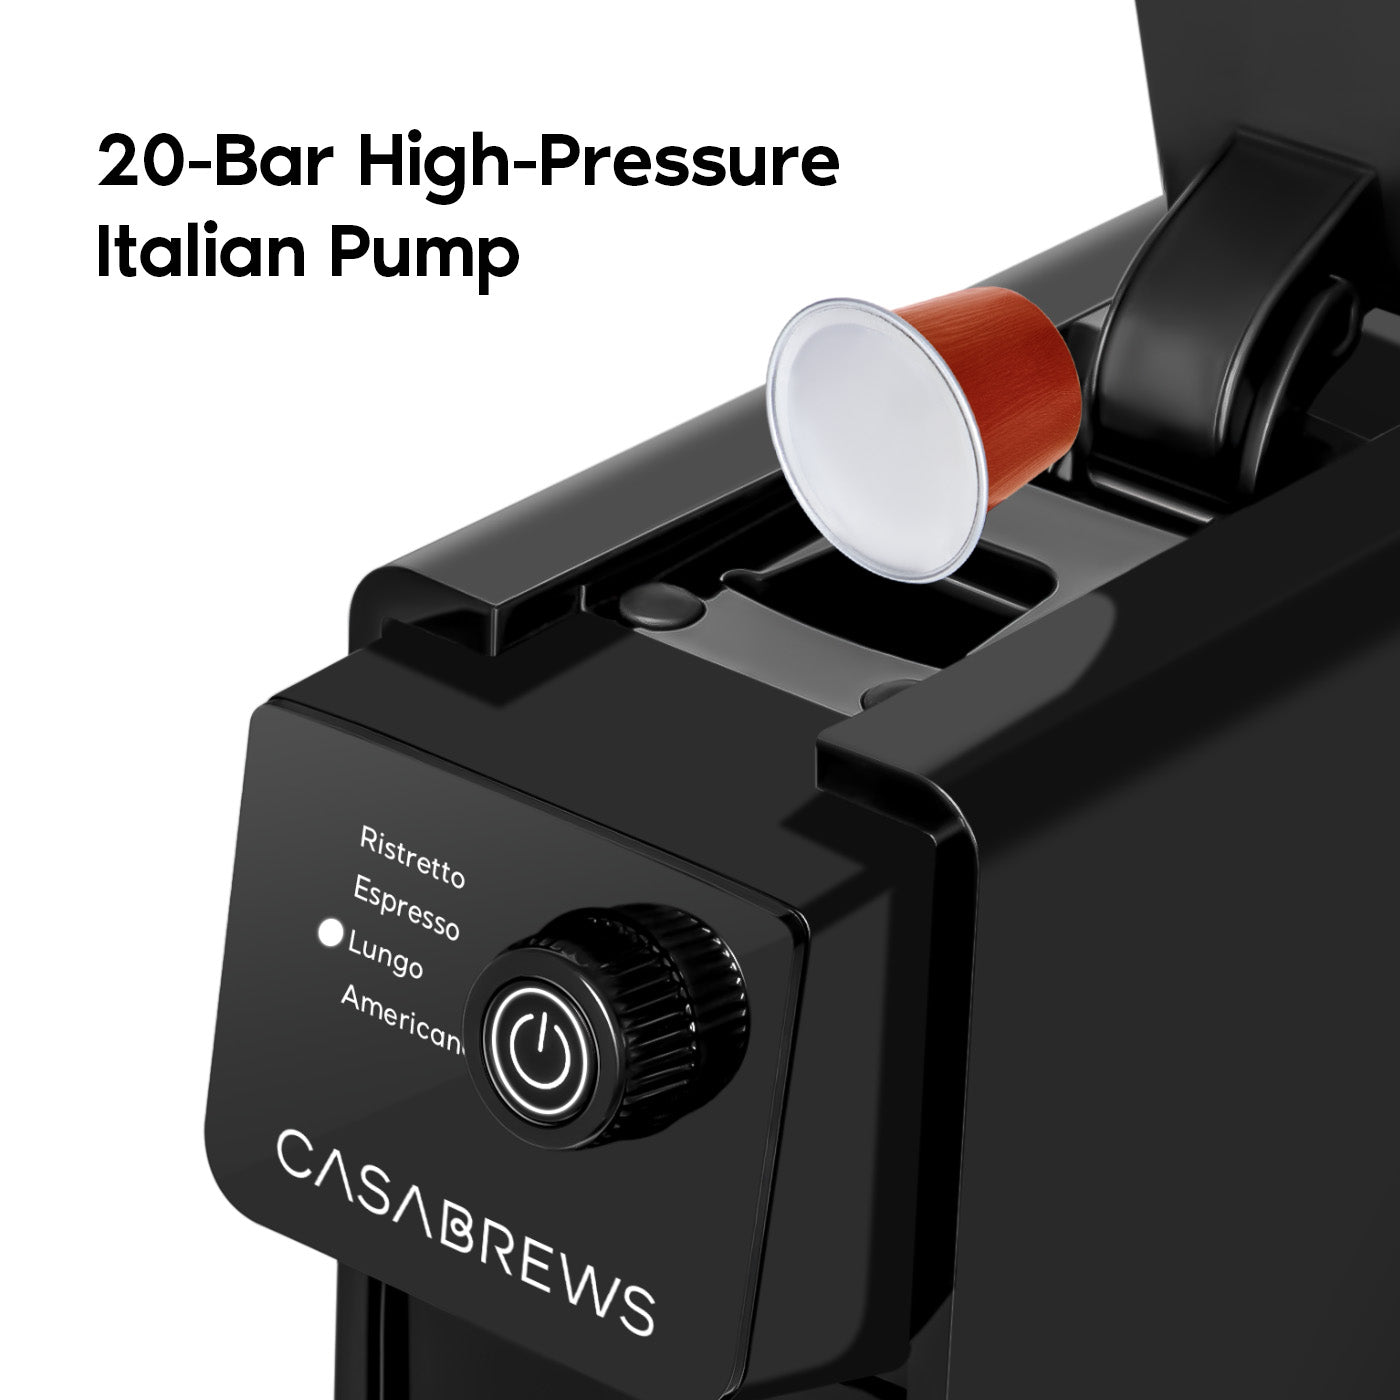 CASABREWS CM7036E™ Espresso Machine for Nespresso Original Pods, 20 Bar Coffee Machine with 4 Brewing Modes, Compact Capsule Coffee Maker